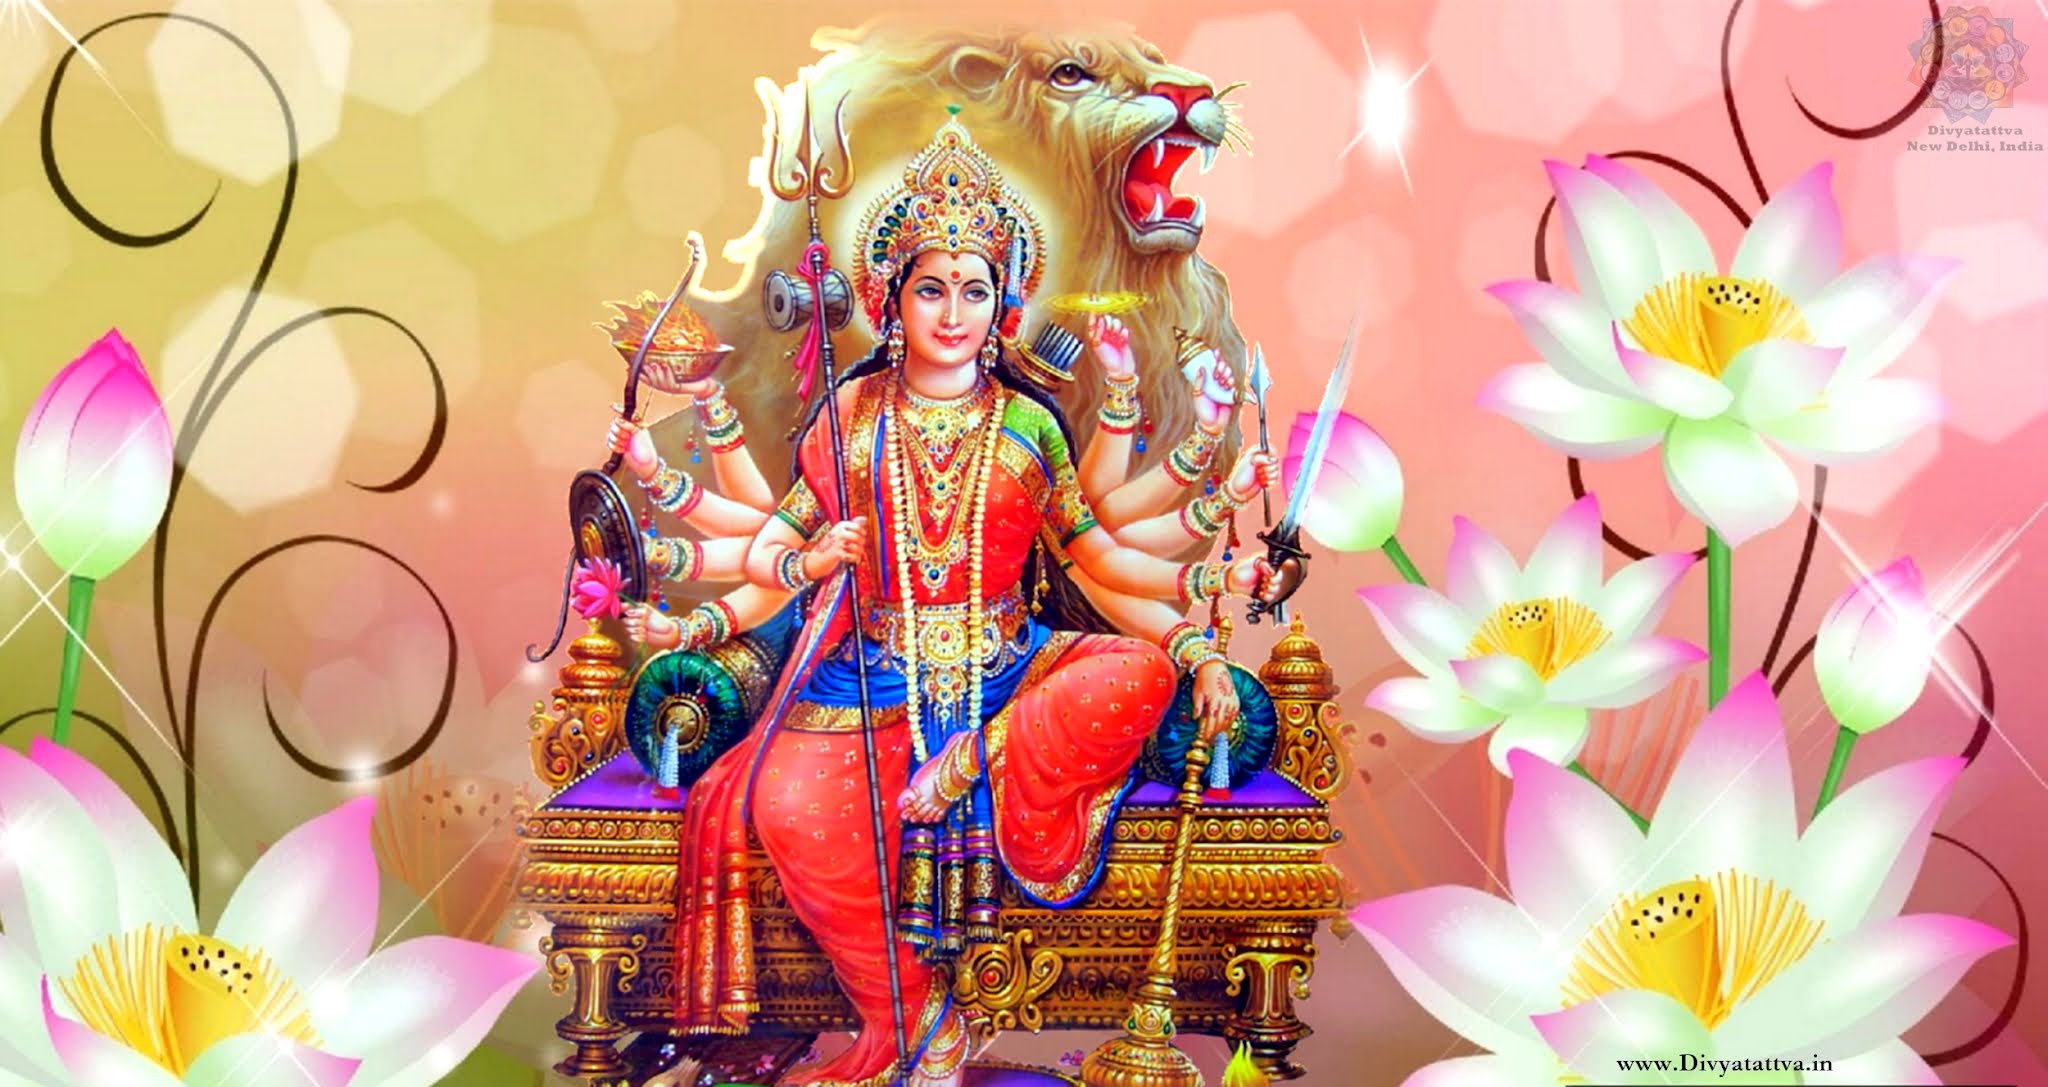 Chaitra Navratri 2023: इस साल कब है चैत्र नवरात्रि? जानिए – तिथि, पूजा विधि और कलश स्थापना का शुभ मुहूर्त, ग्रहों से बने दुर्लभ संयोग में घर पधारेगी माँ दुर्गा